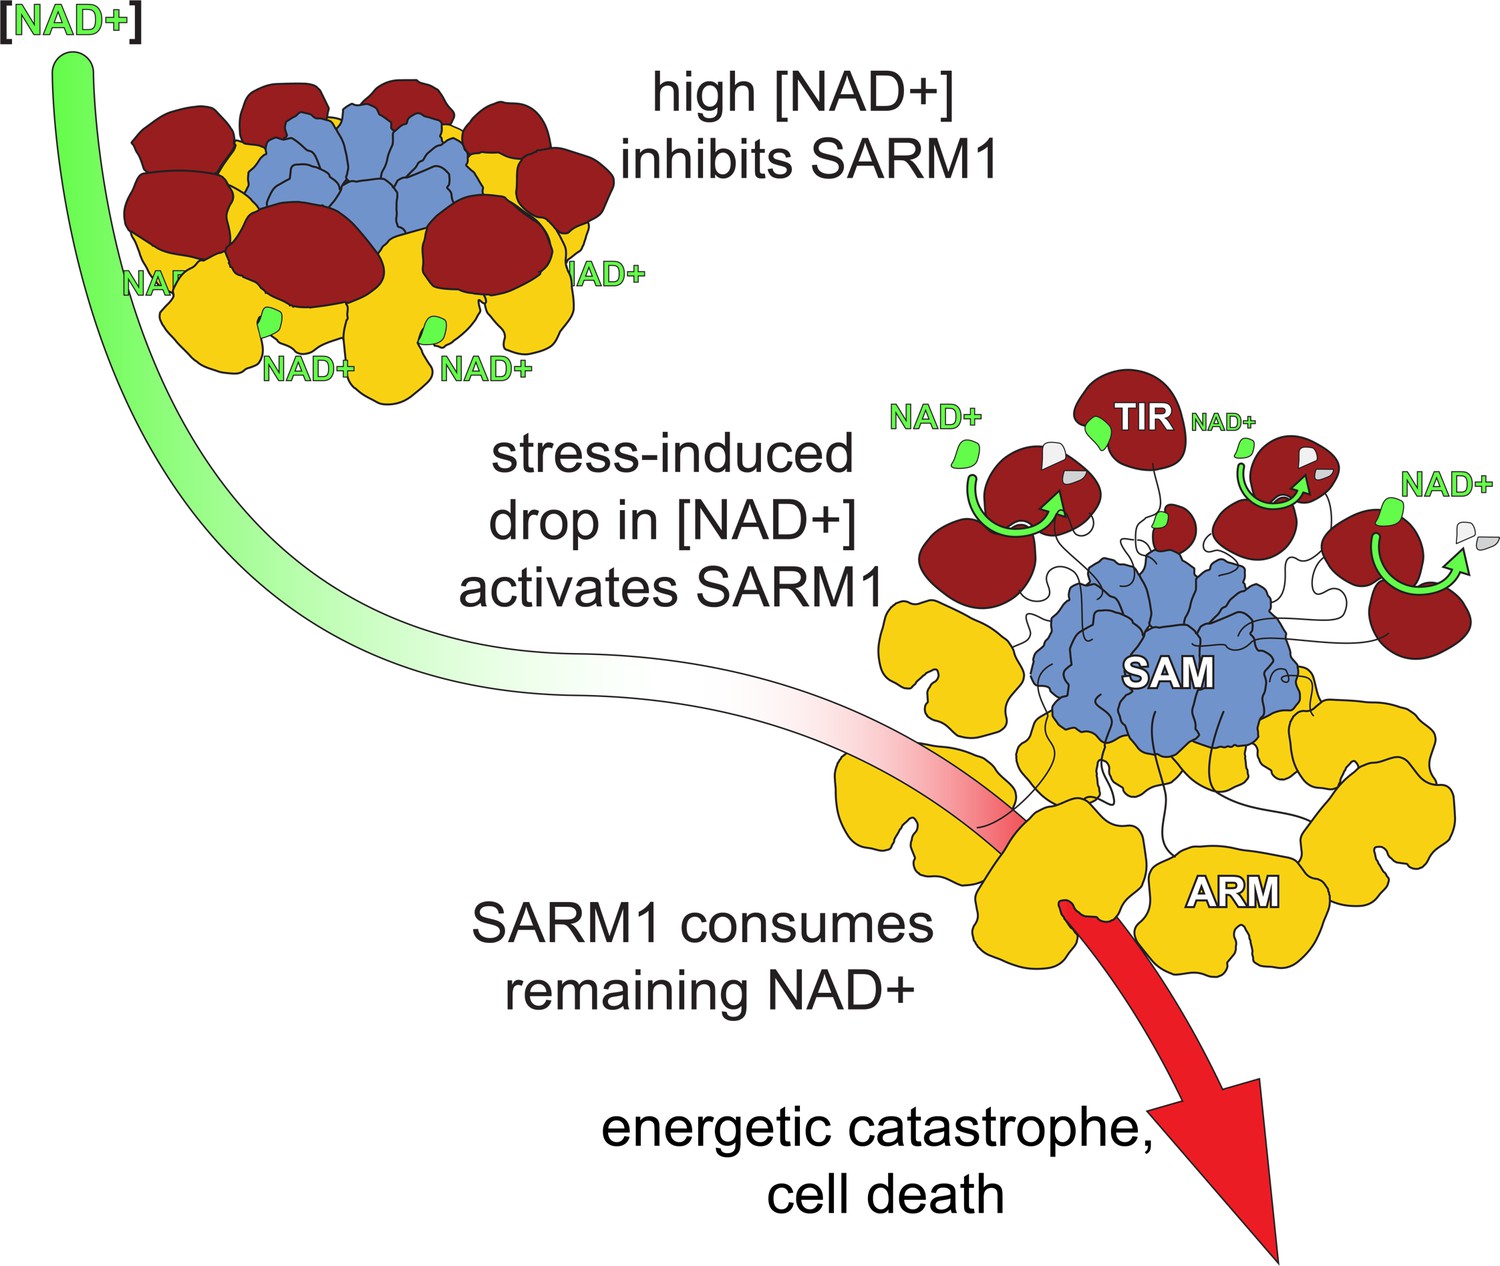 SARM1 inhibition